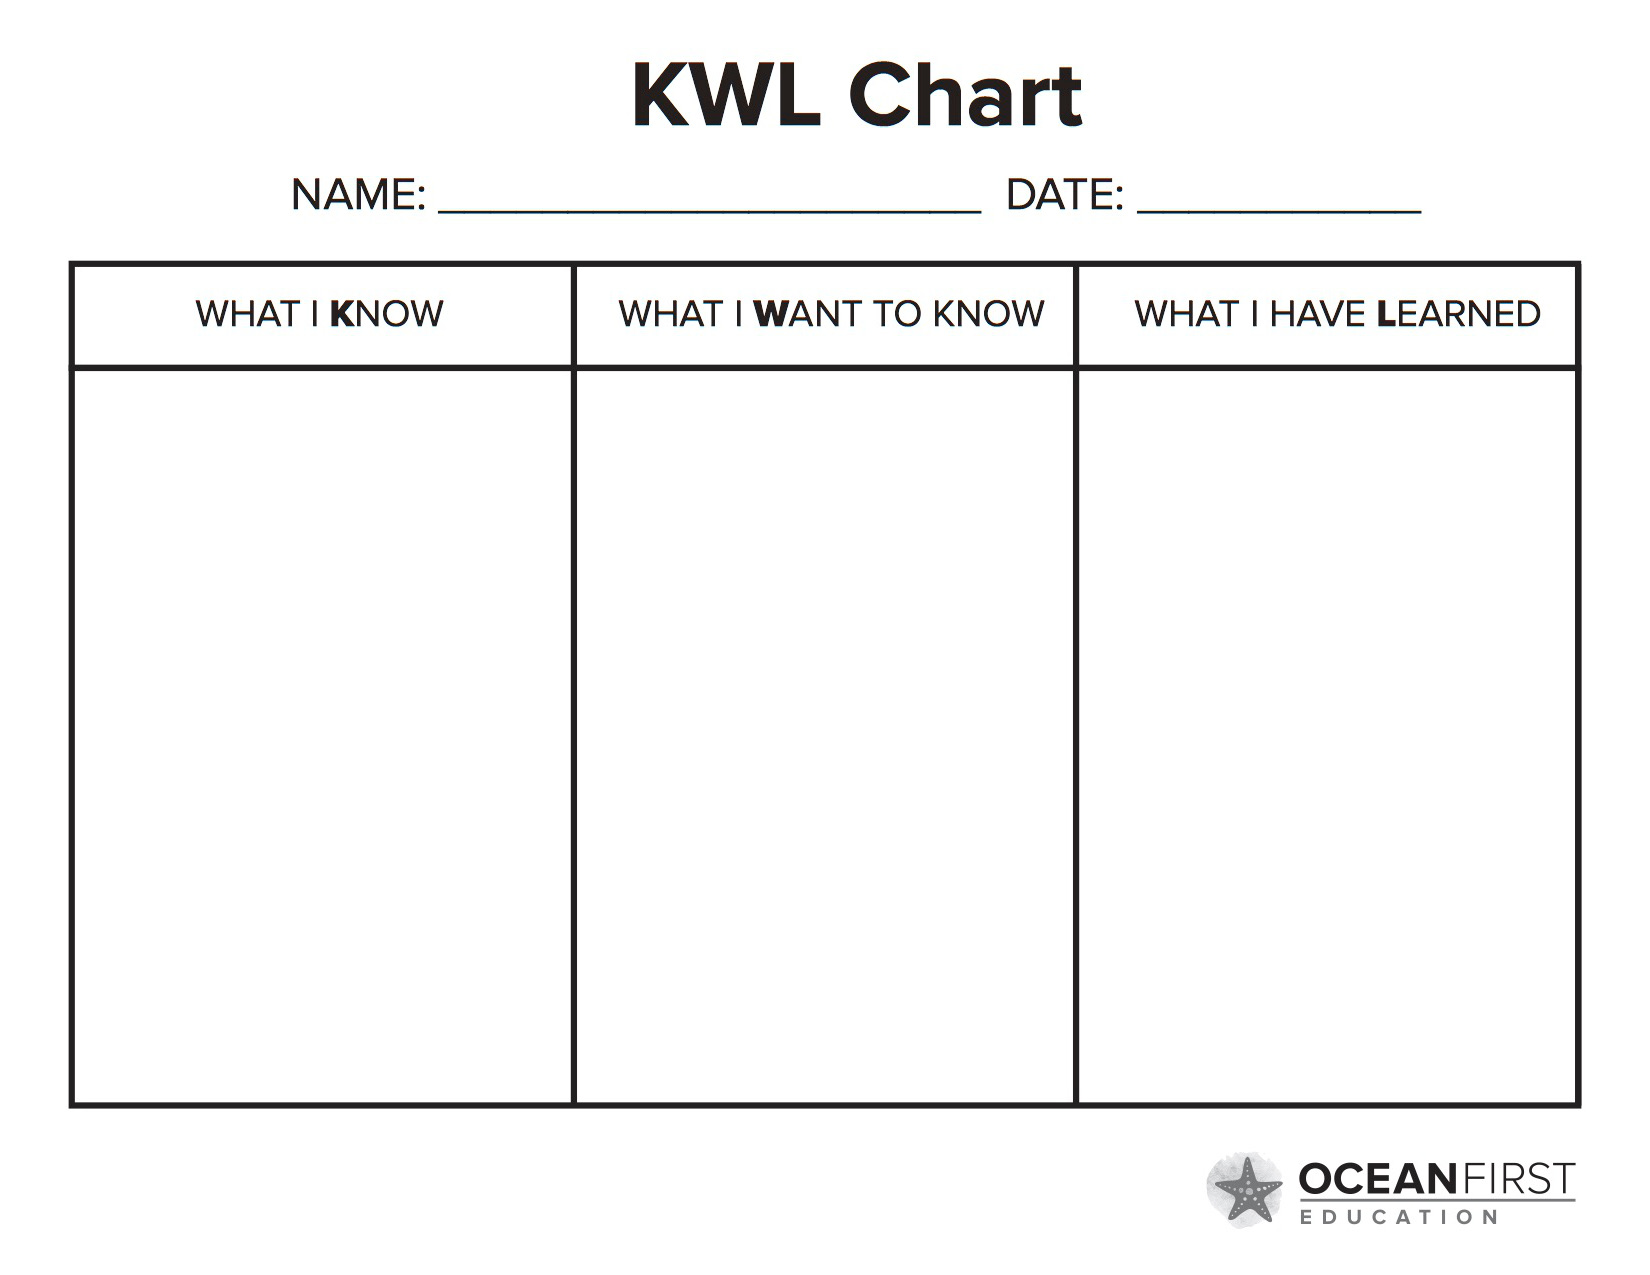 Every want to know. Таблица KWL. KWL. KWL-диаграммы. Стратегия KWL.